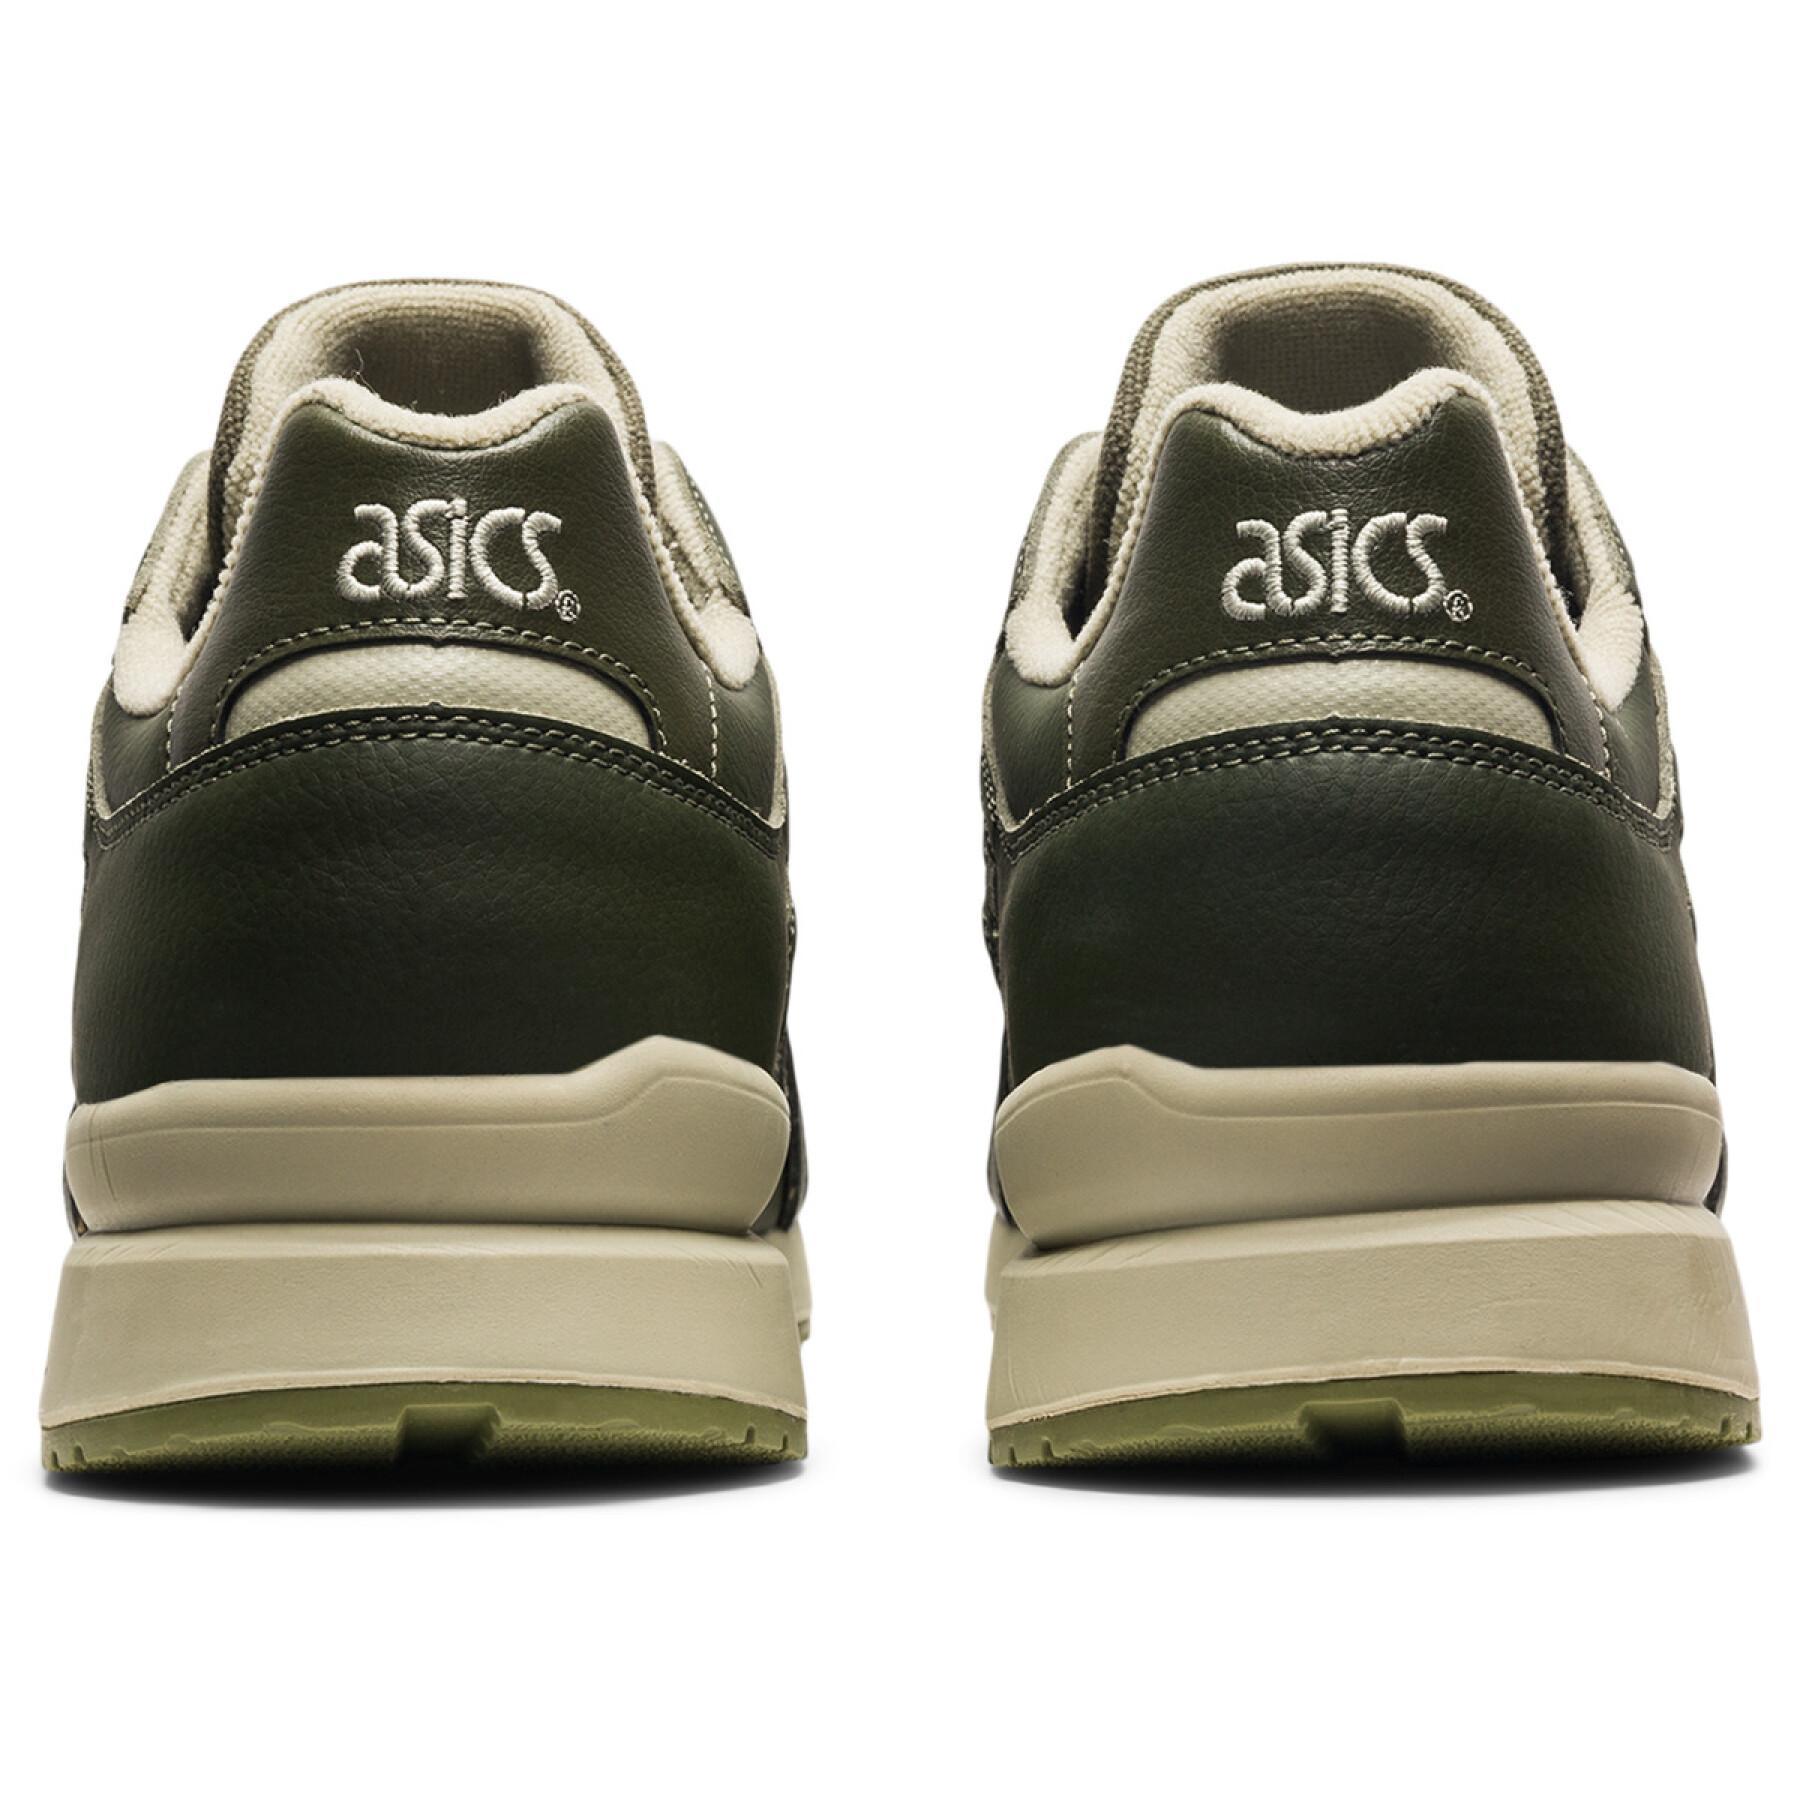 Asics Gt-Ii Shoes